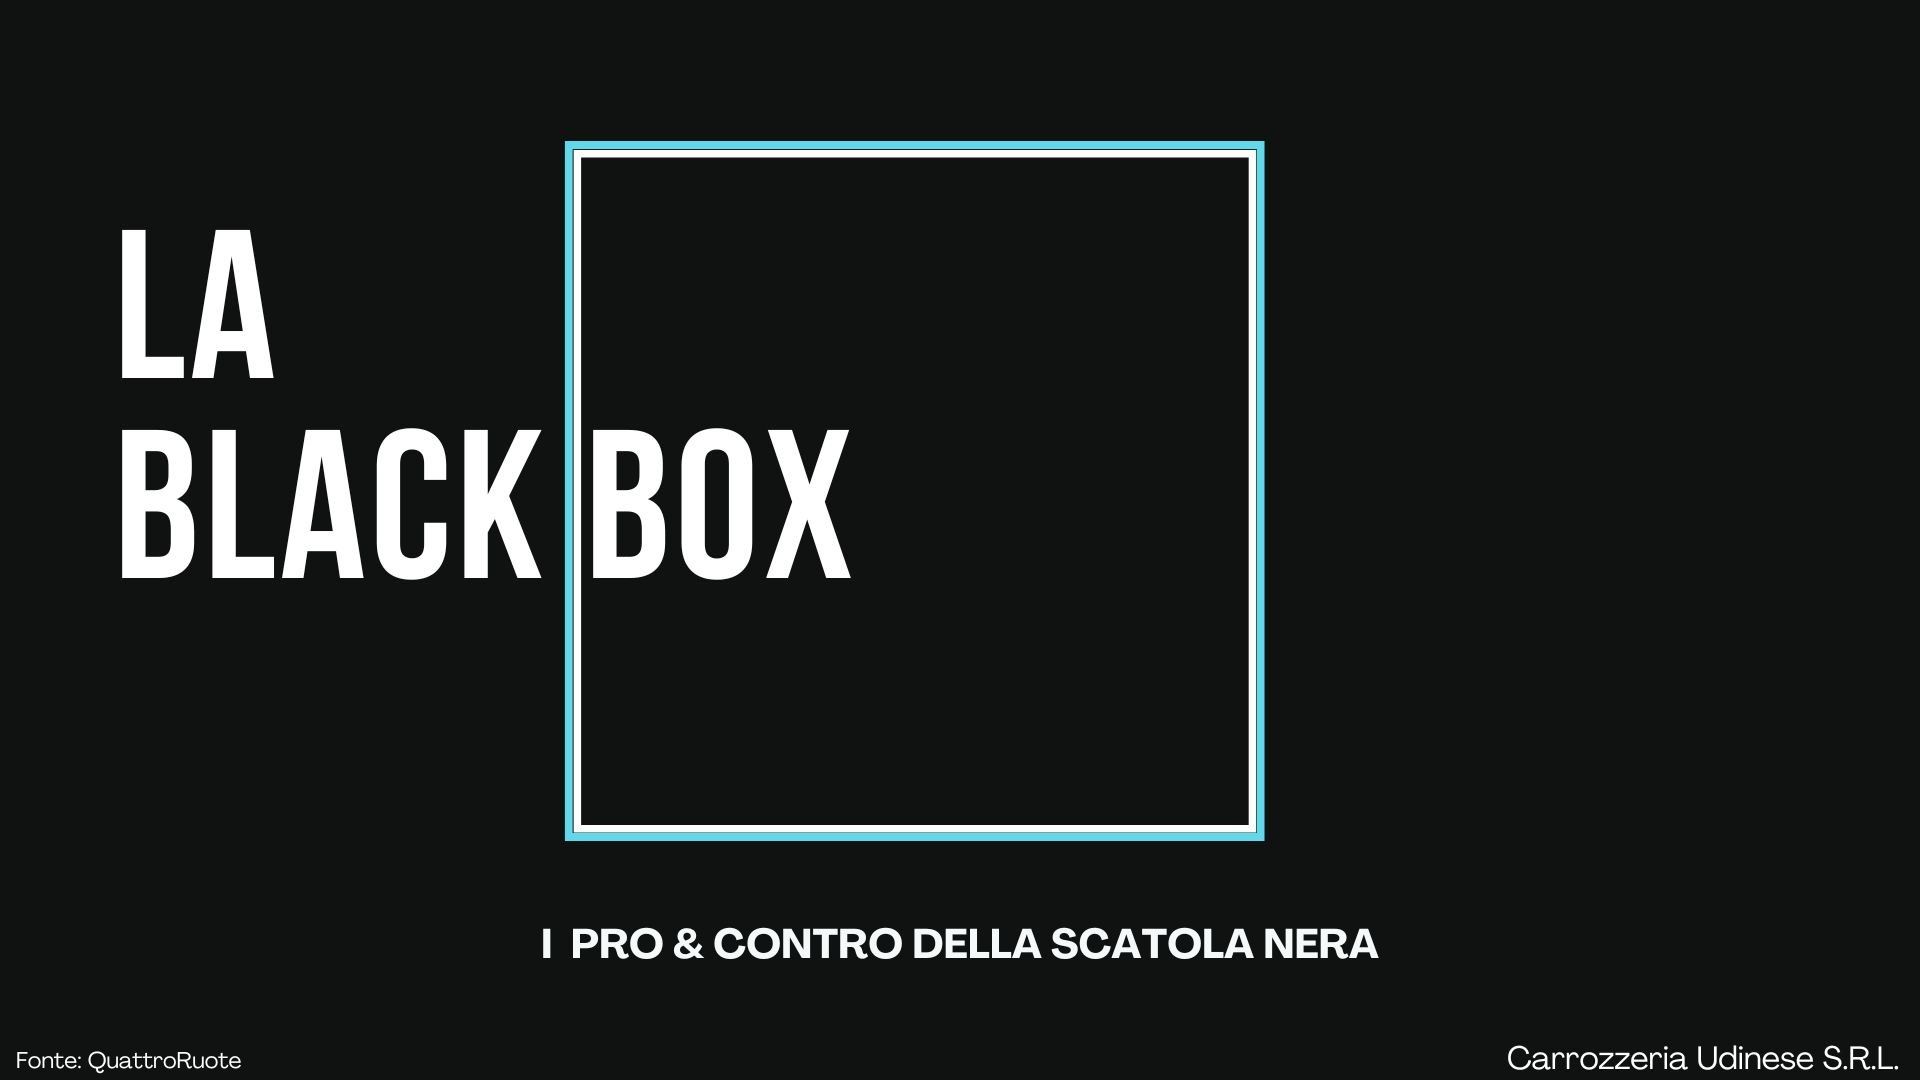 #BlackBox